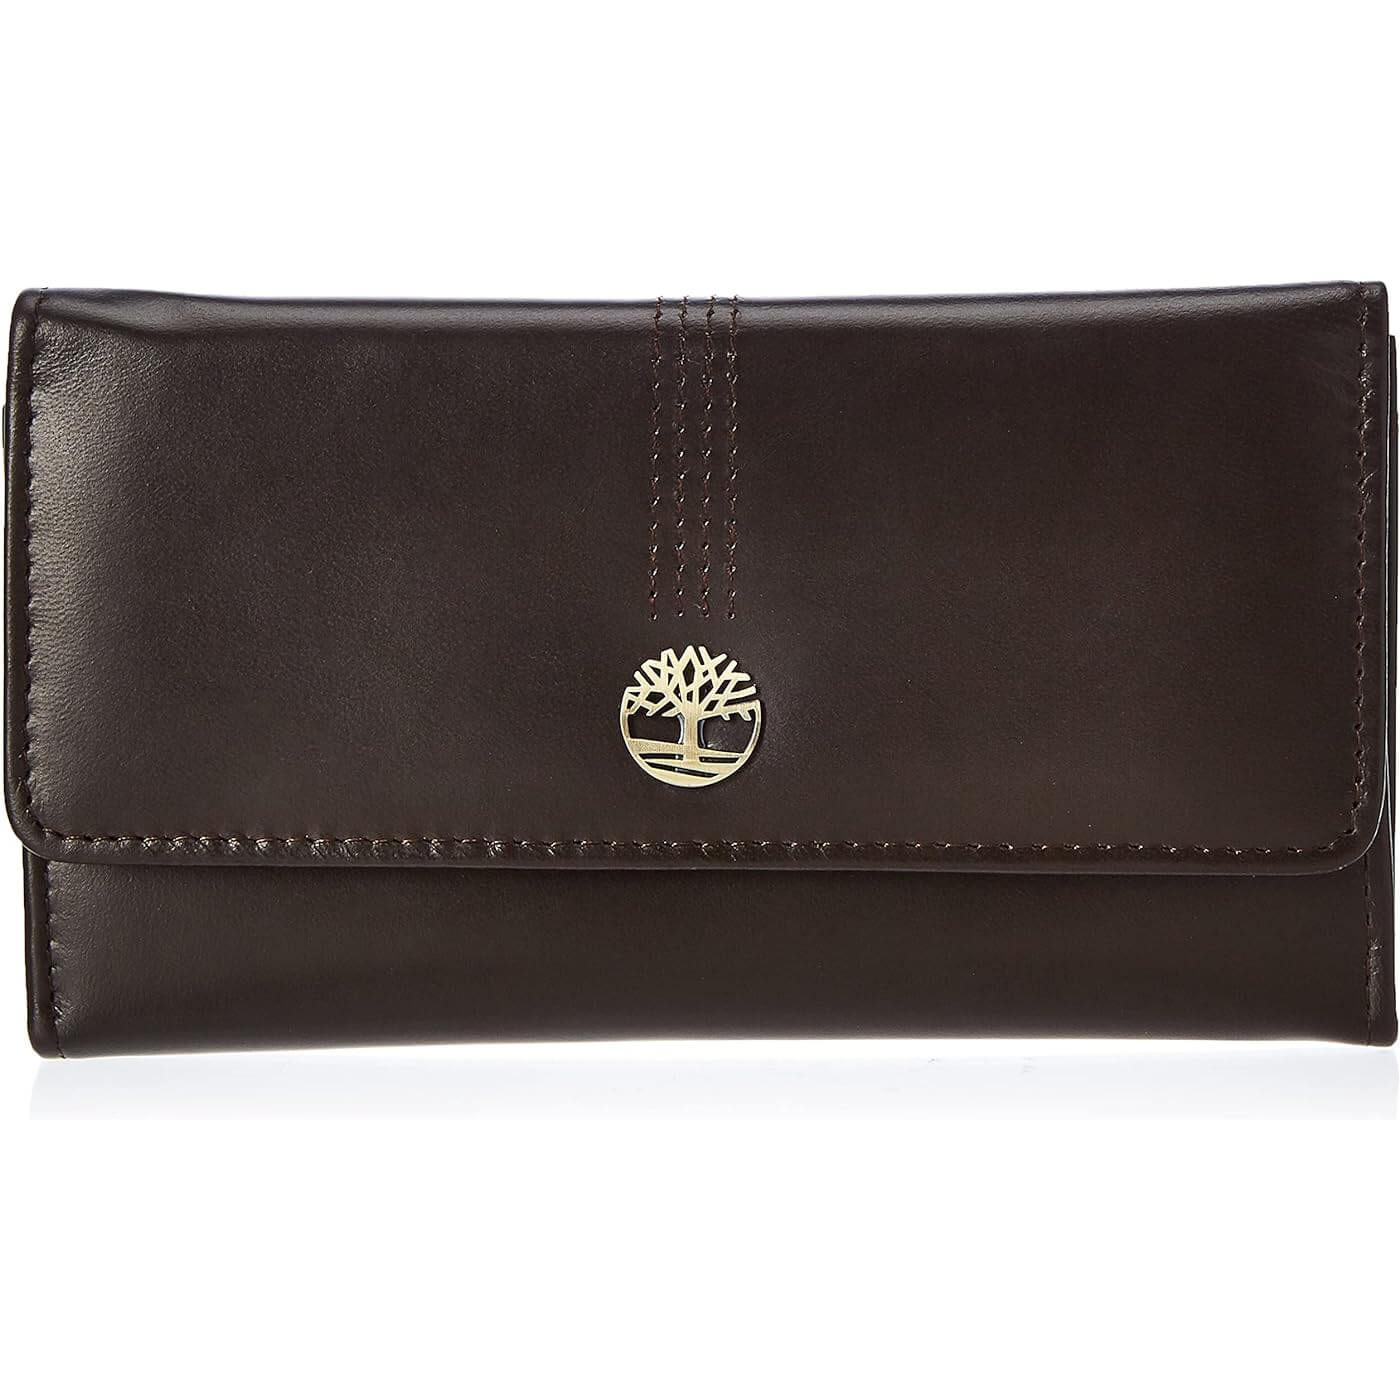 Кожаный кошелек-клатч Timberland RFID Flap Organizer, коричневый женский кошелек из натуральной кожи дамский удлиненный клатч с двойной молнией и rfid кредитница бумажники для телефона